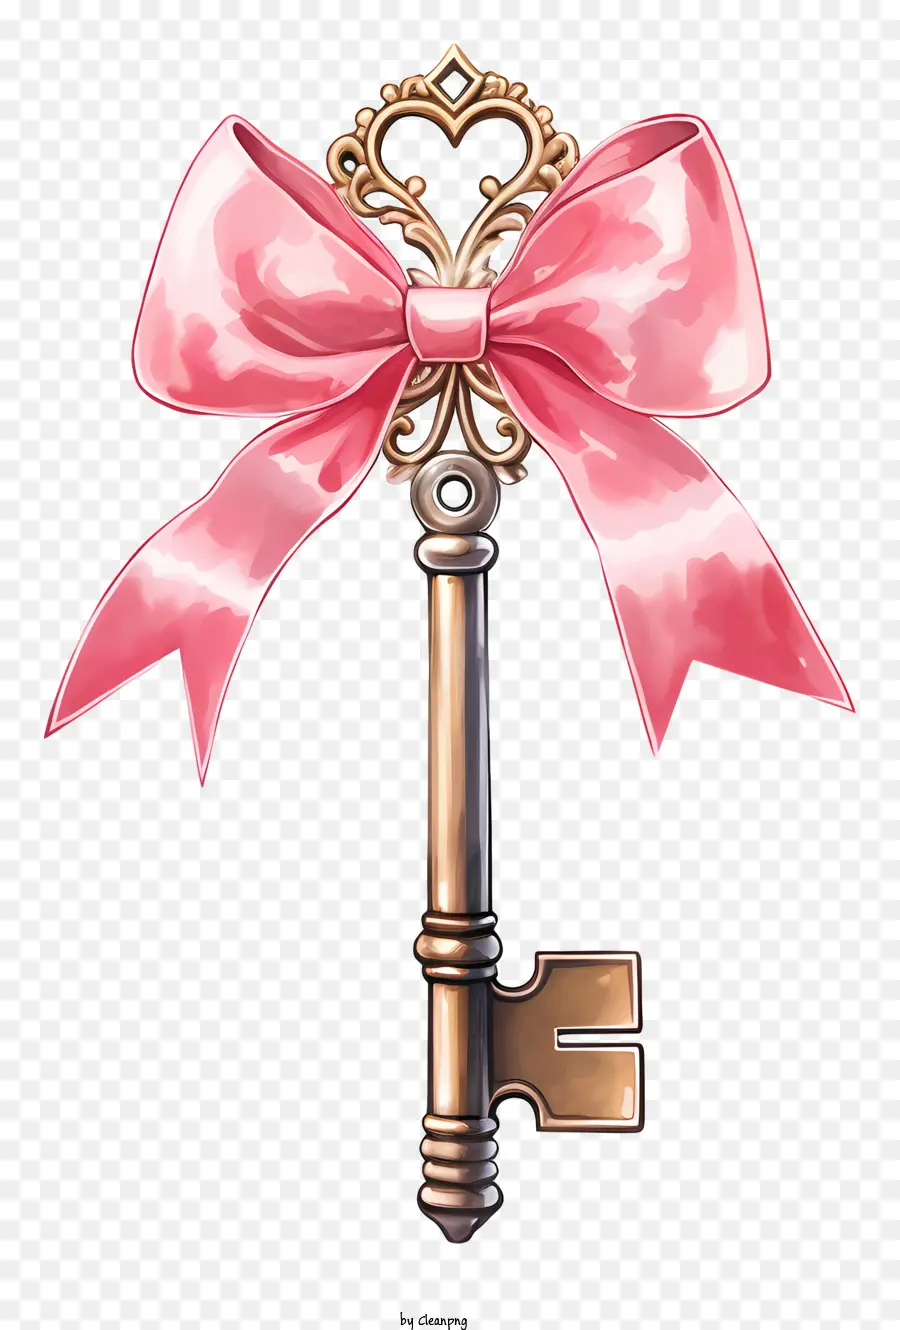 Key Large Key Frecate Key Pink Bogenschlüssel Metallschlüssel - Nahaufnahme eines komplizierten, glänzenden, verzierten Schlüssels mit Bogen